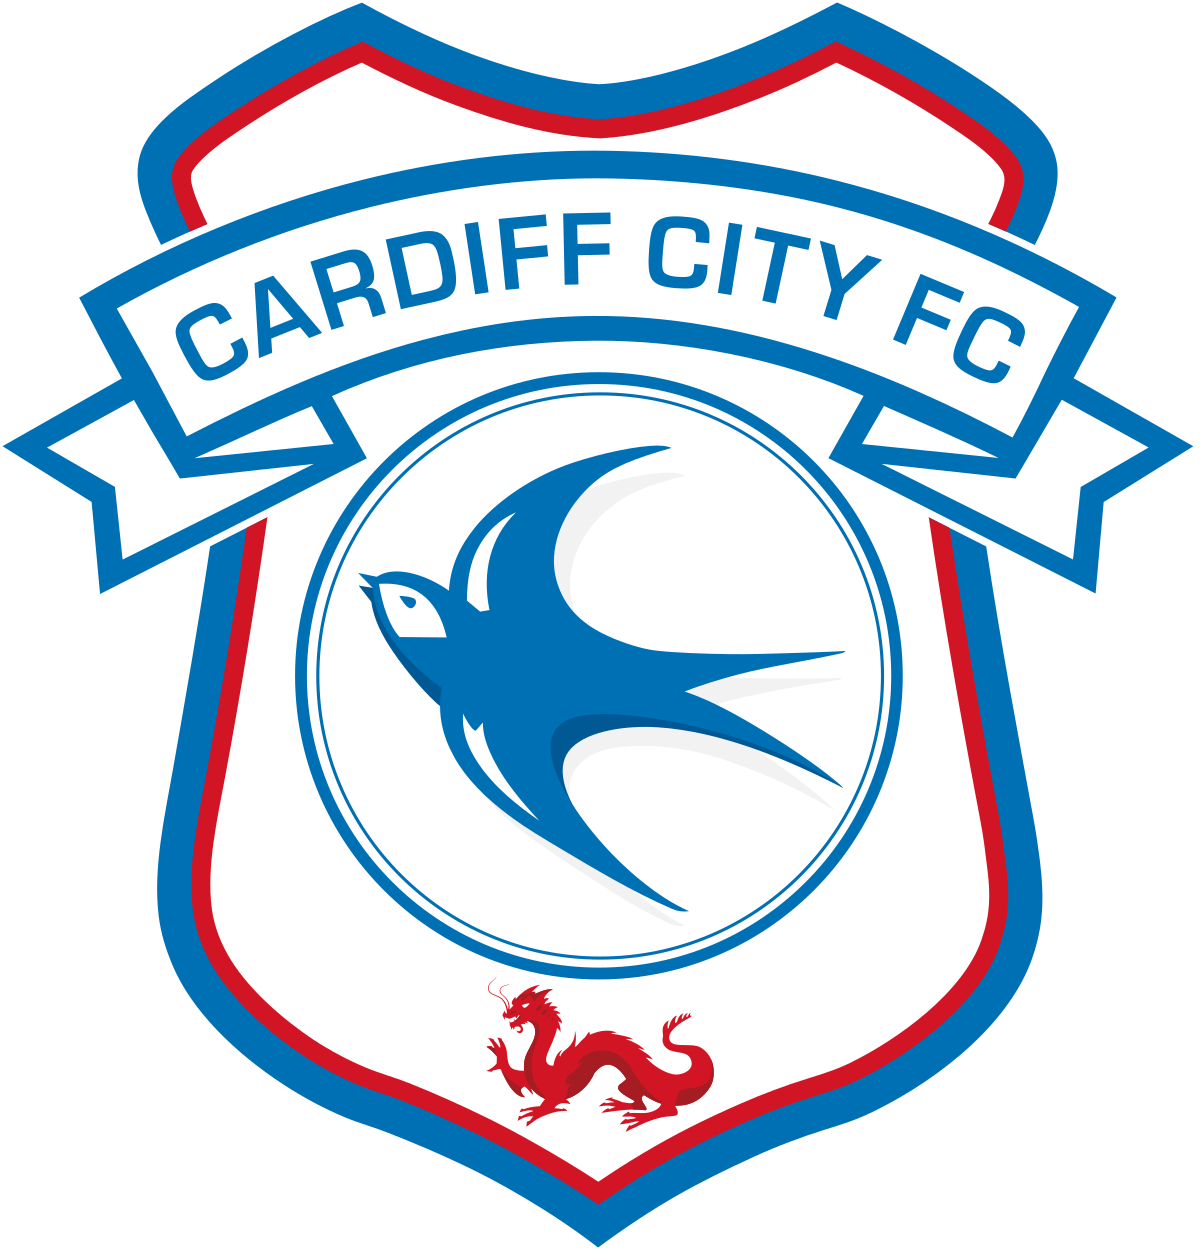 Cardiff City F C PNG изображения фон